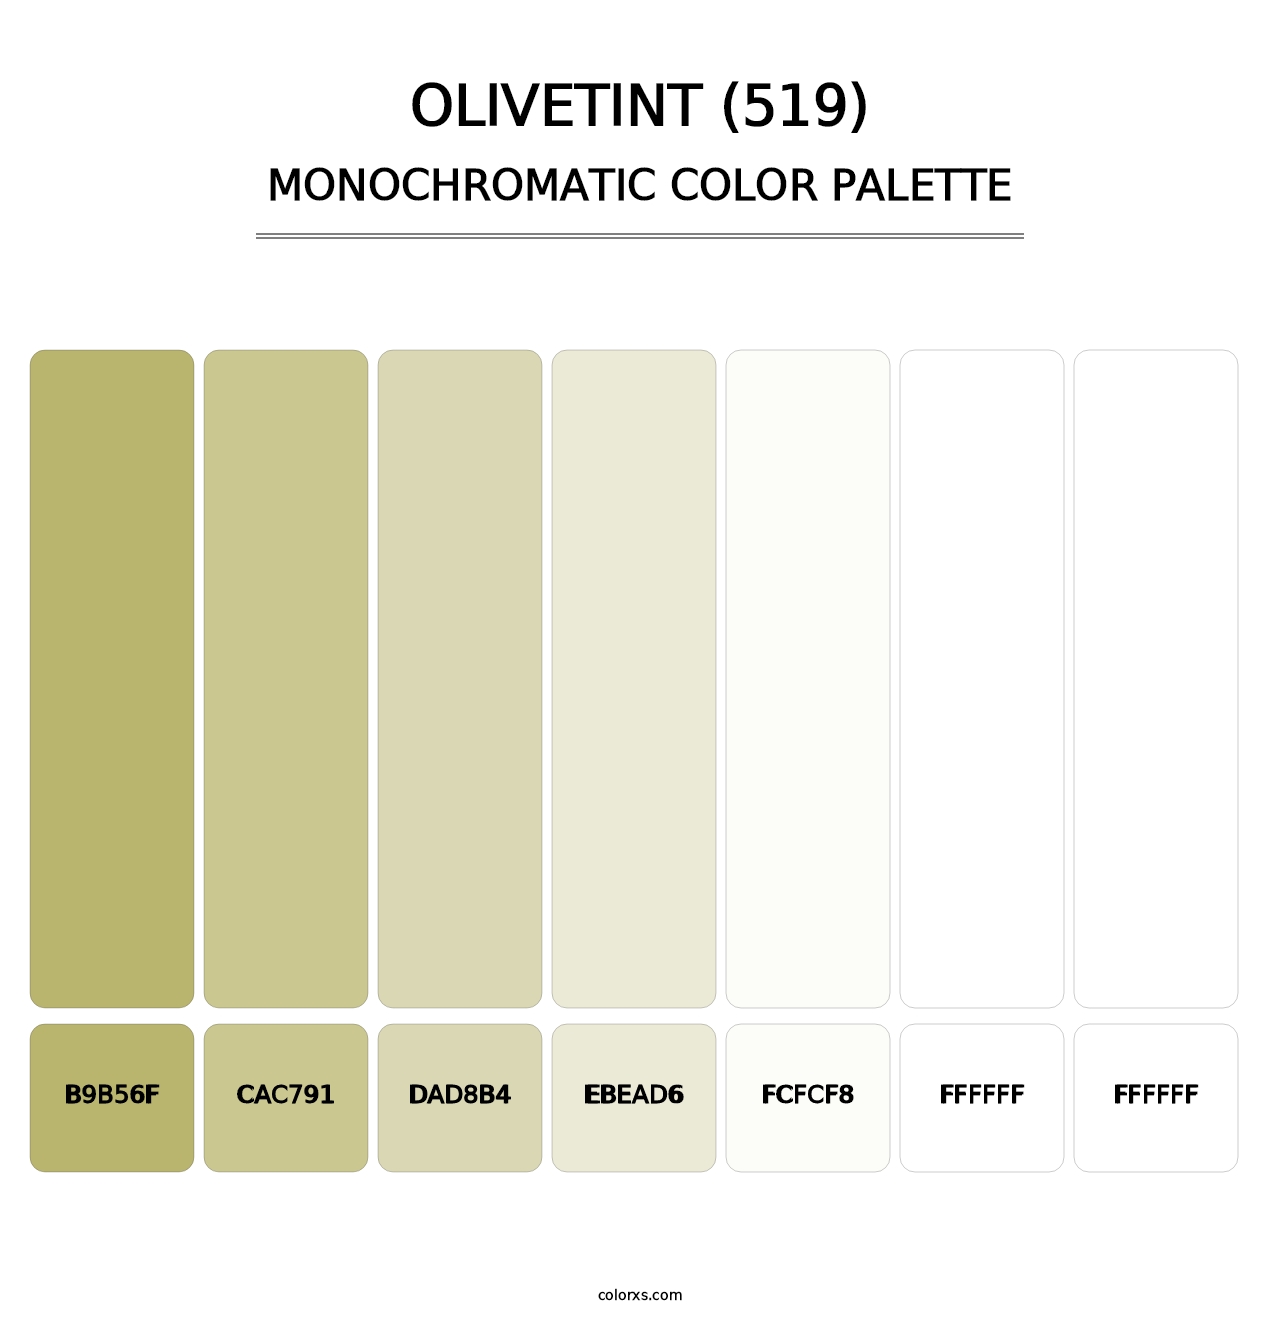 Olivetint (519) - Monochromatic Color Palette